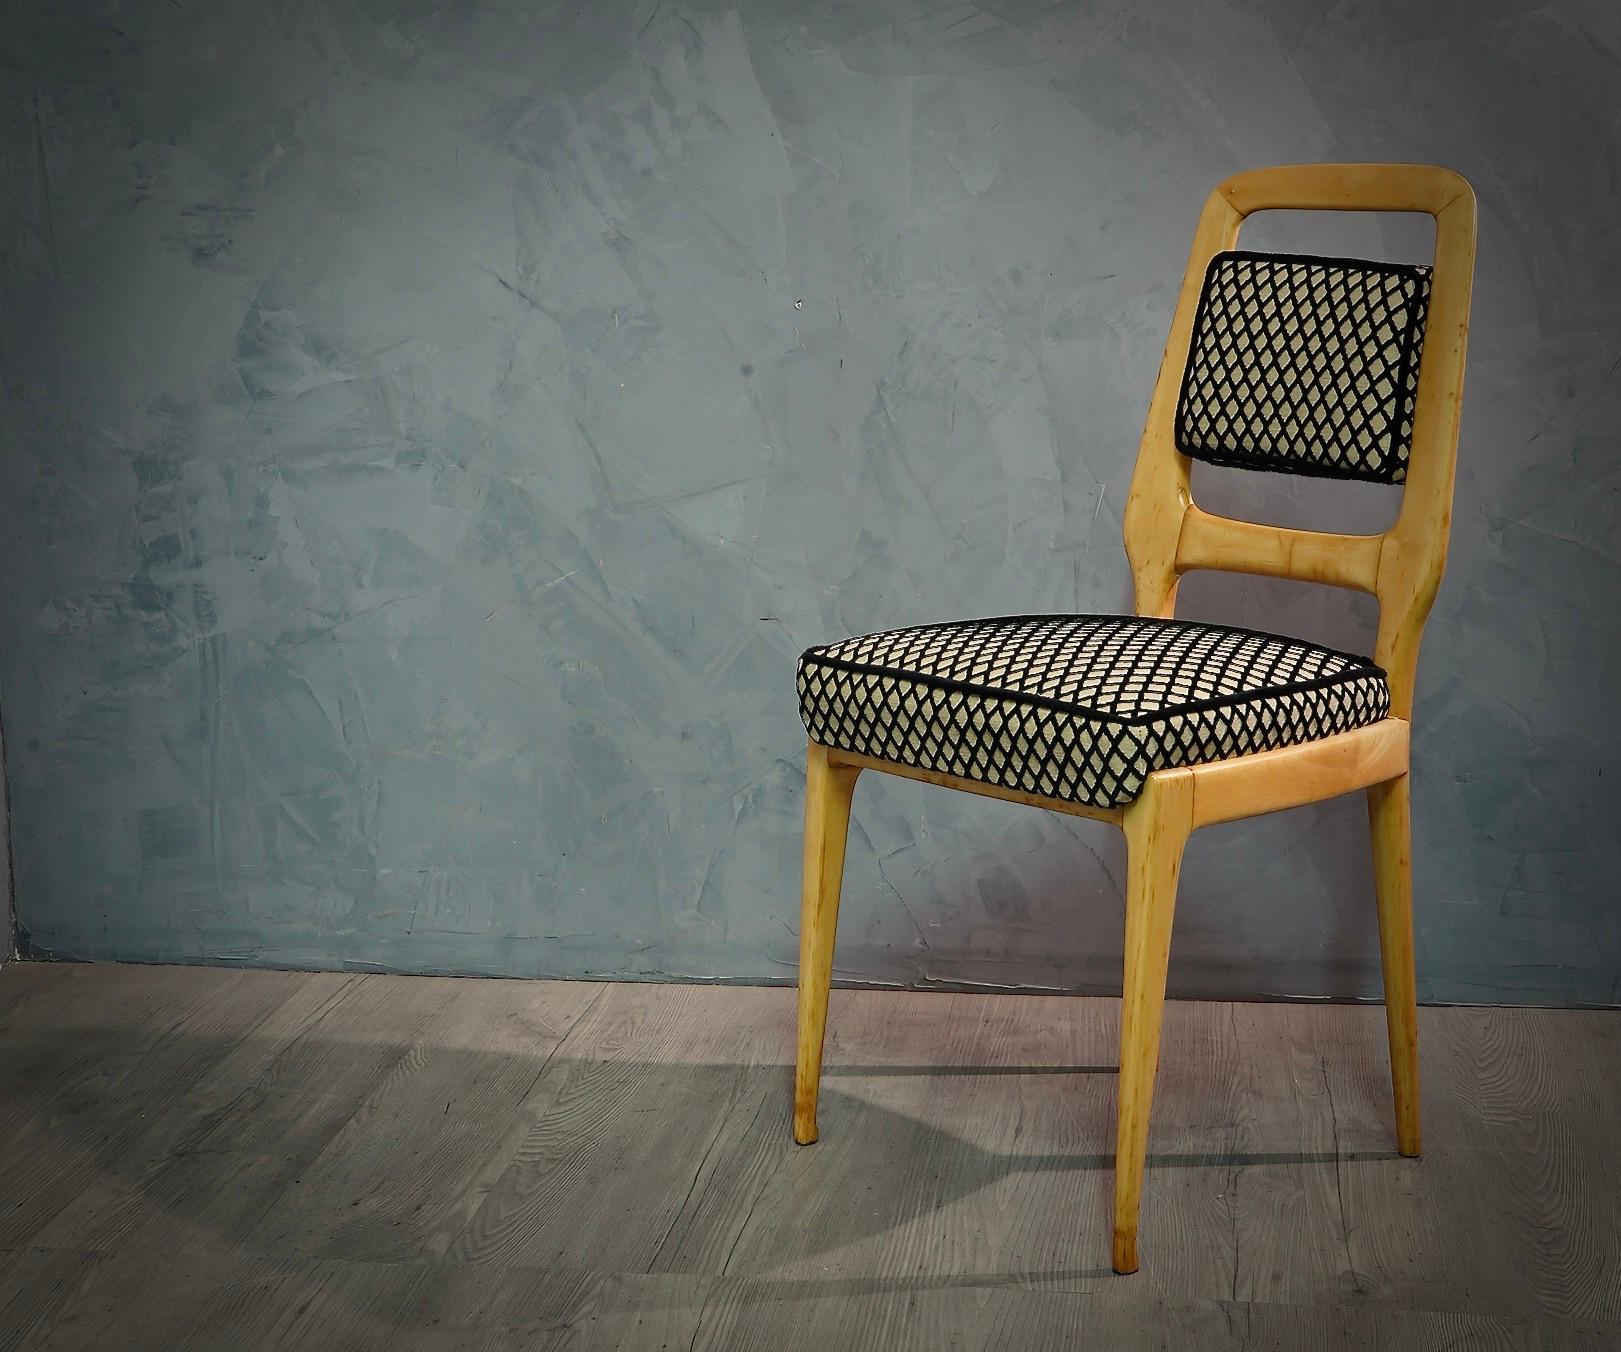 Set mit sechs Stühlen in schönem 1950er Design, mit geraden Beinen und stark geformter Rückenlehne. Originalität und Stil für diese Stühle, die für eine stilvolle Einrichtung entworfen wurden.

Die sechs Stühle haben eine Struktur aus Ahornholz, die